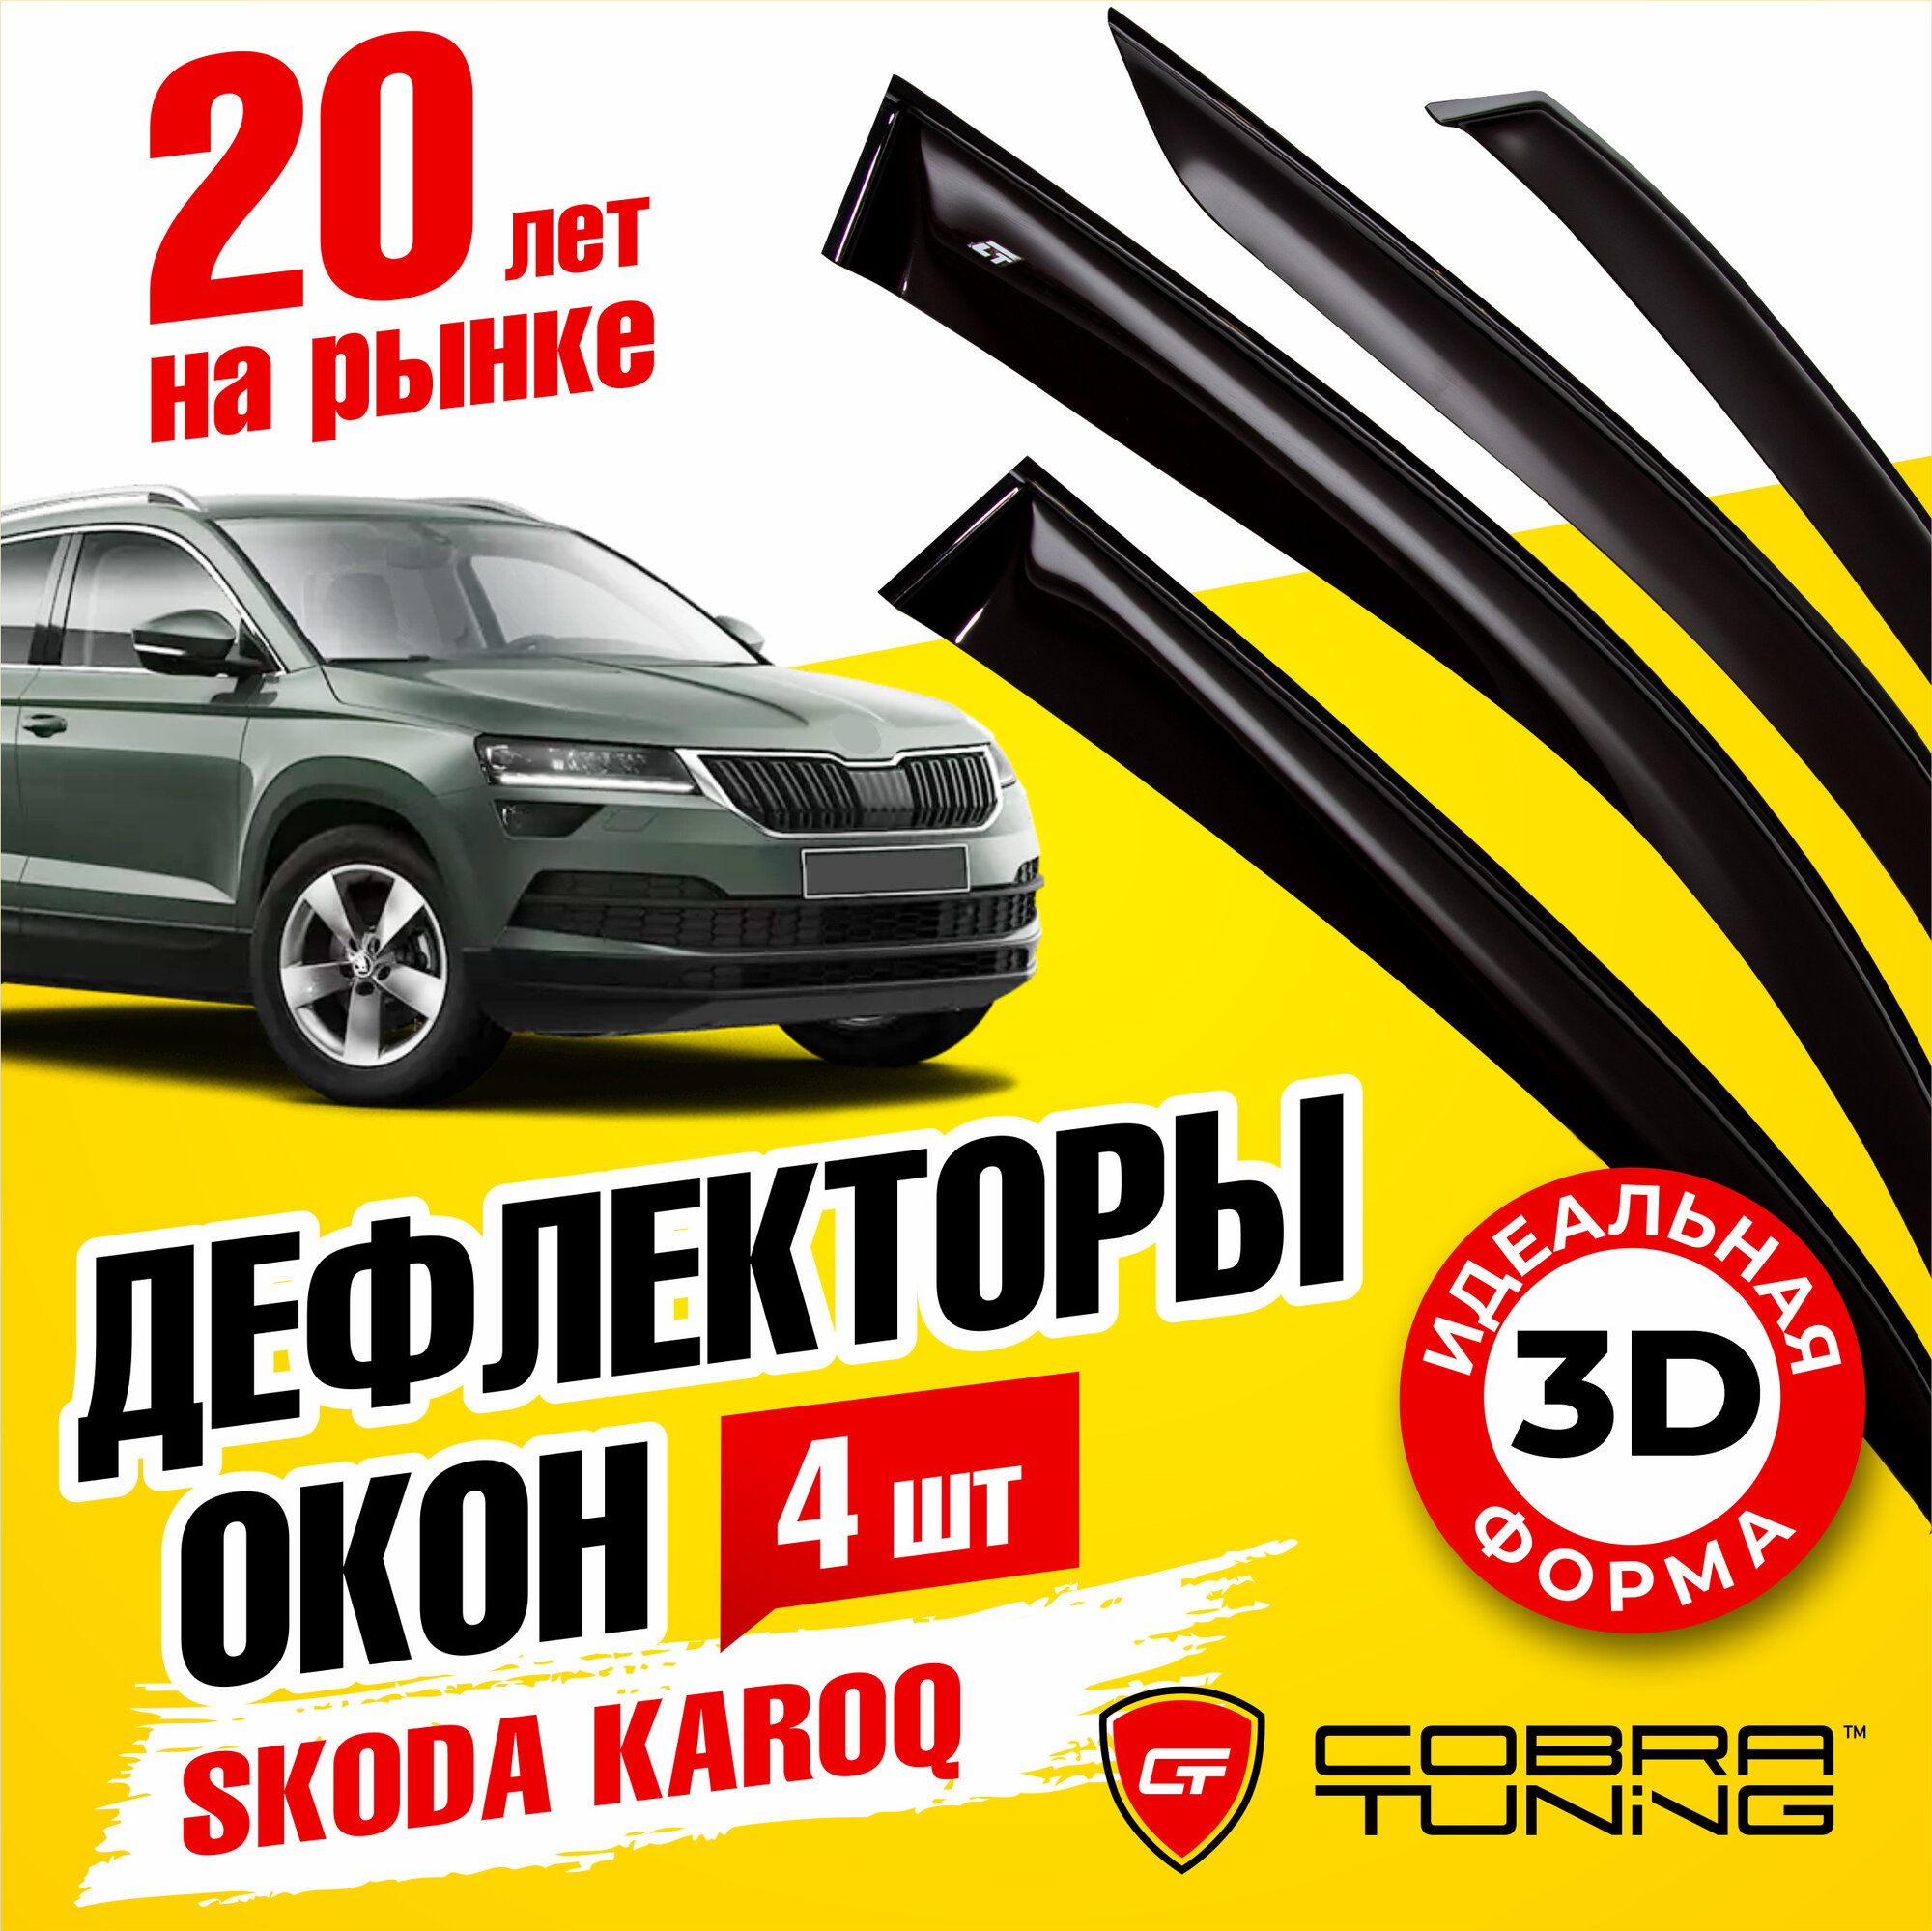 Дефлекторы боковых окон для Skoda Karoq (Шкода Карог) 2020-2022, Jetta VS5 (Джетта ВС5) 2019-2023, ветровики на двери автомобиля, Cobra Tuning